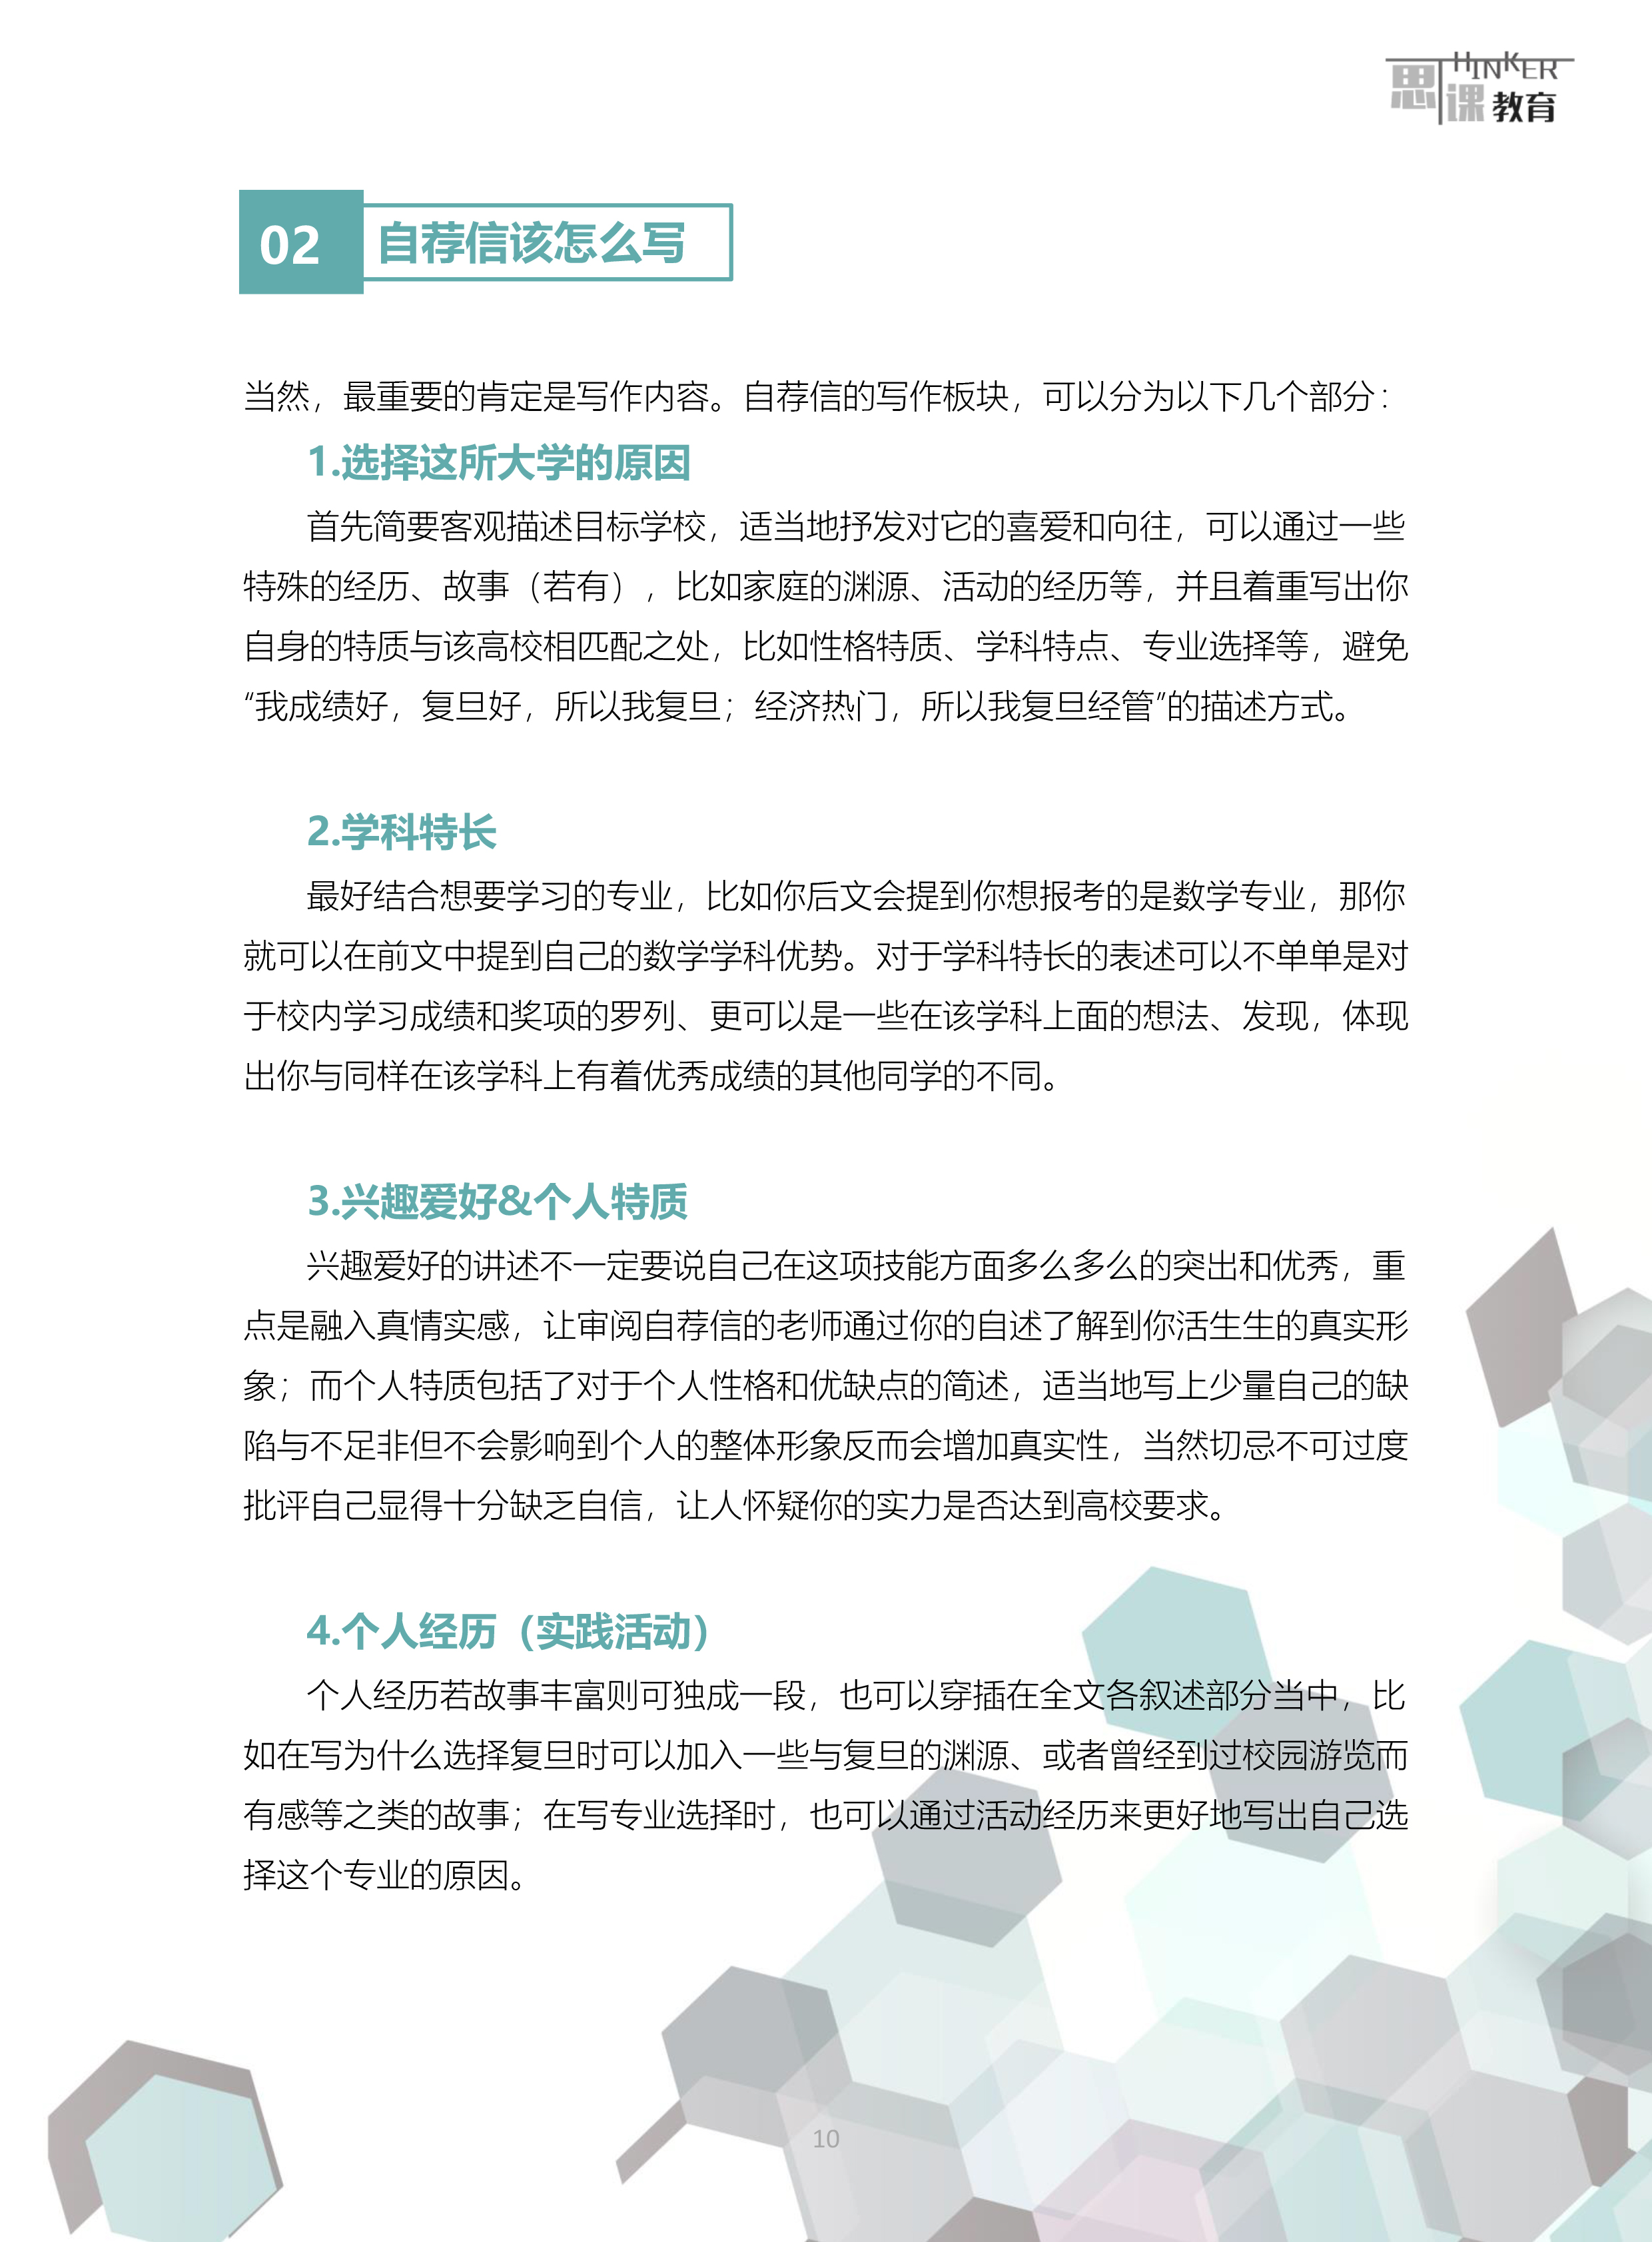 上海综合评价自荐信 -写作指导与范例